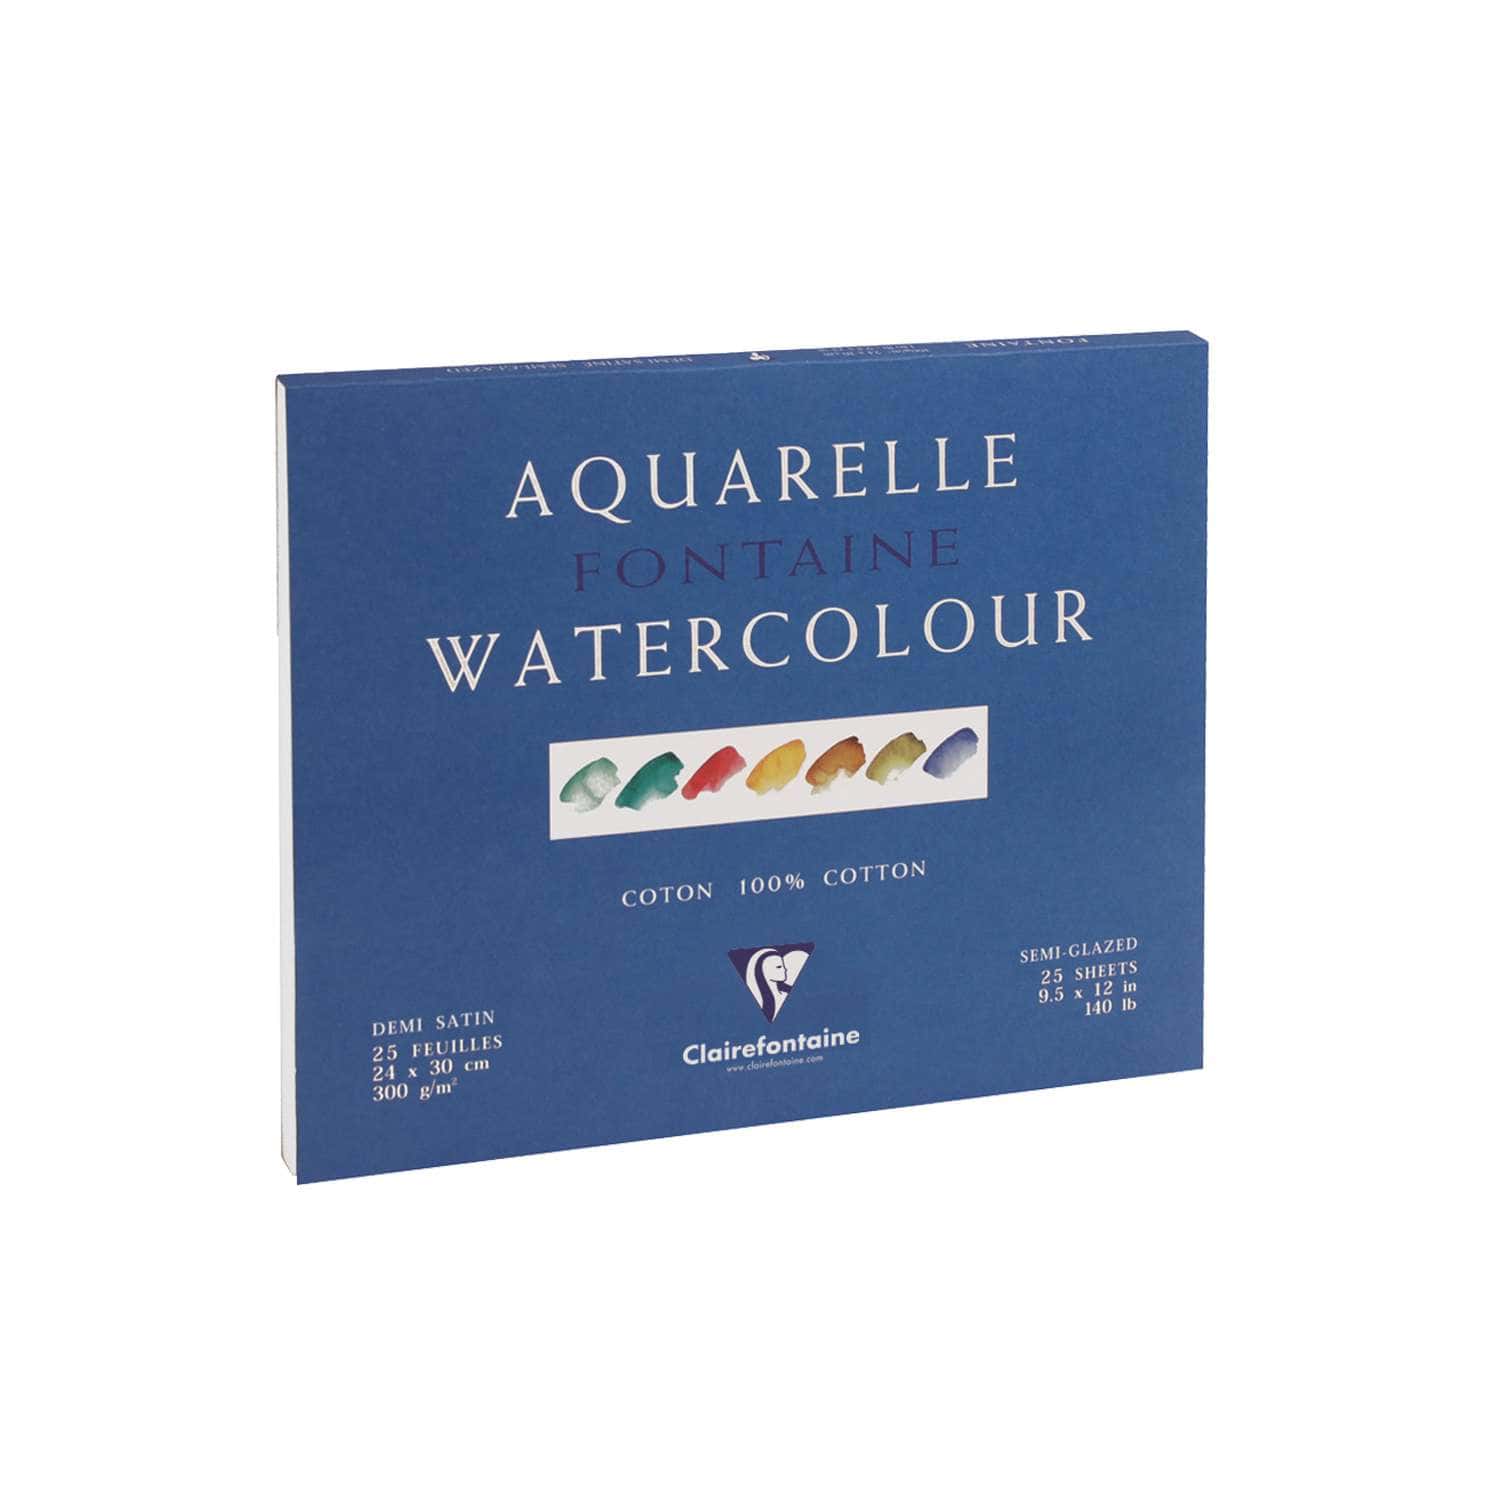 Arches Aquarelle - papier aquarelle - A4 - 15 feuilles Pas Cher | Bureau  Vallée